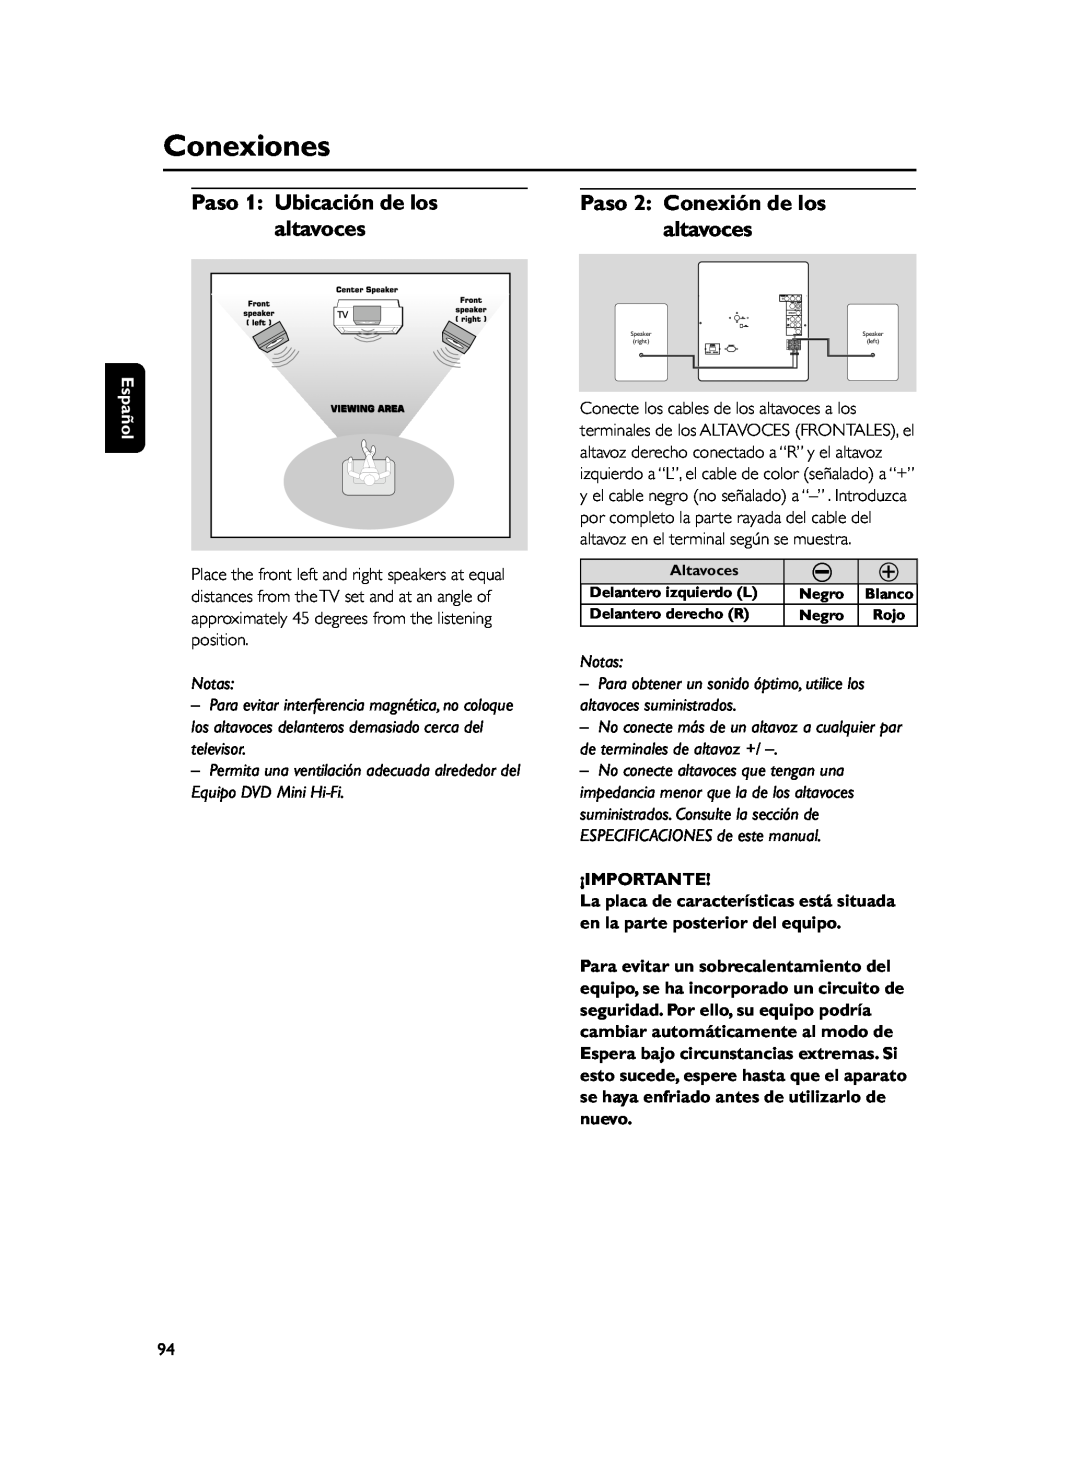 Philips FWD39 manual Conexiones, Paso 1 Ubicación de los, Paso 2 Conexión de los, altavoces, ¡Importante, Español, Notas 